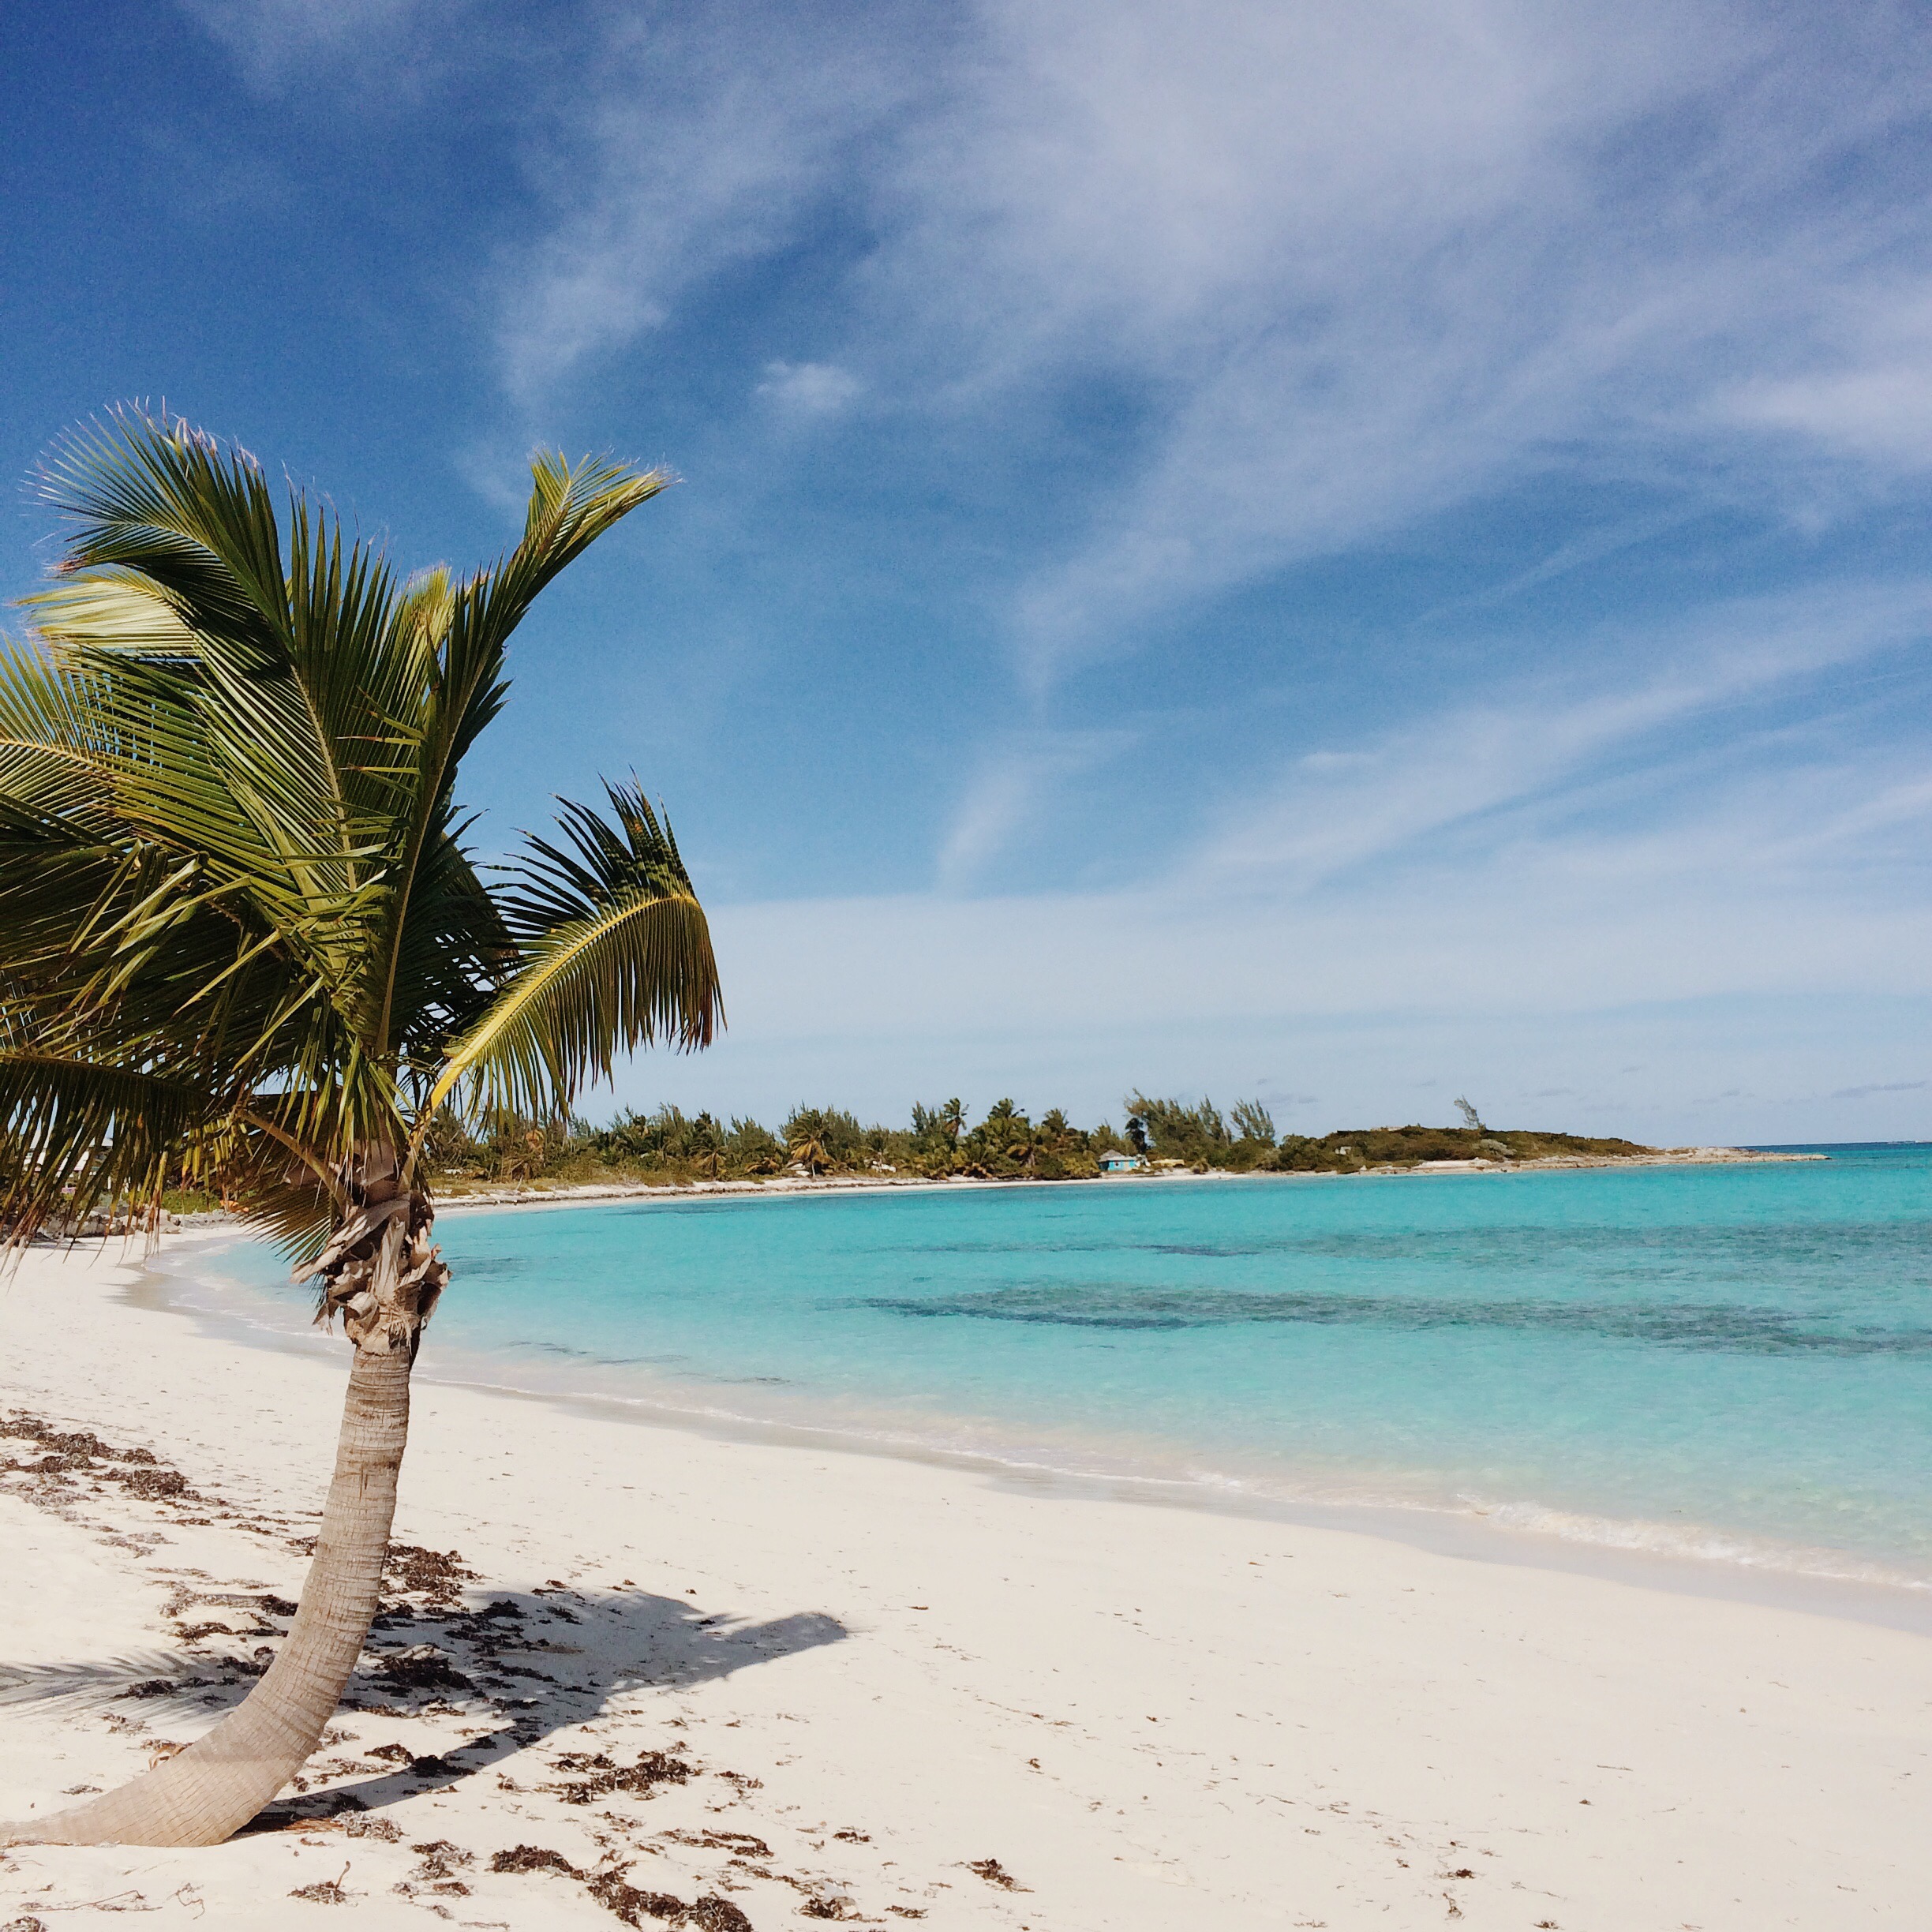 Paradise | Perfect Beach Vacation | Caribbean Vacation Ideas | Traveling to The Exumas, Bahamas | Guide to Exumas, Bahamas | elanaloo.com